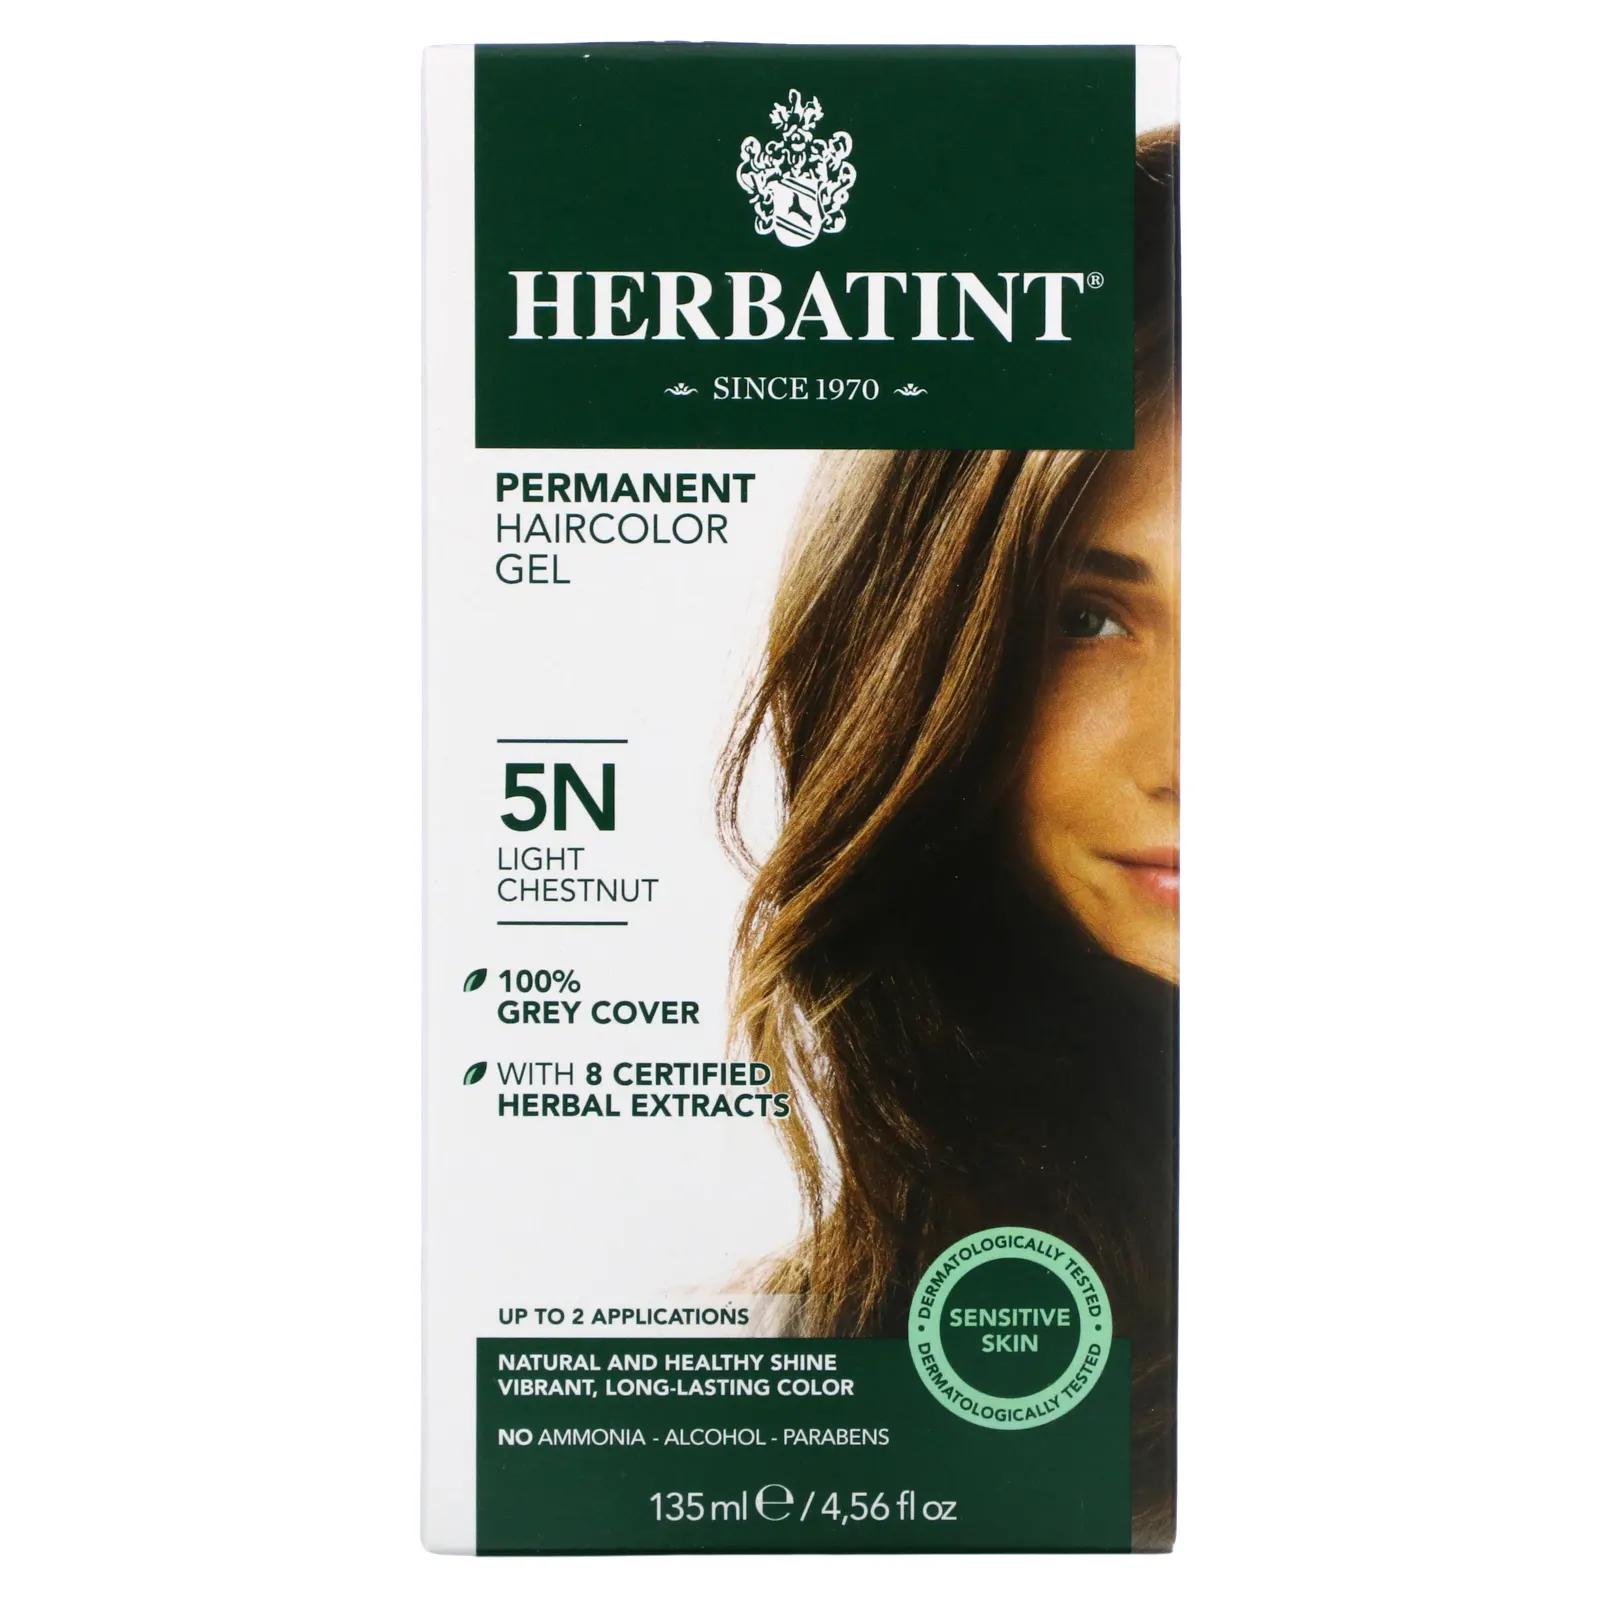 Herbatint Перманентная краска-гель для волос 5N светлый каштан 4,56 жидкой унции (135 мл) herbatint стойкая гель краска для волос 4m красное дерево и каштан 135 мл 4 56 жидкой унции